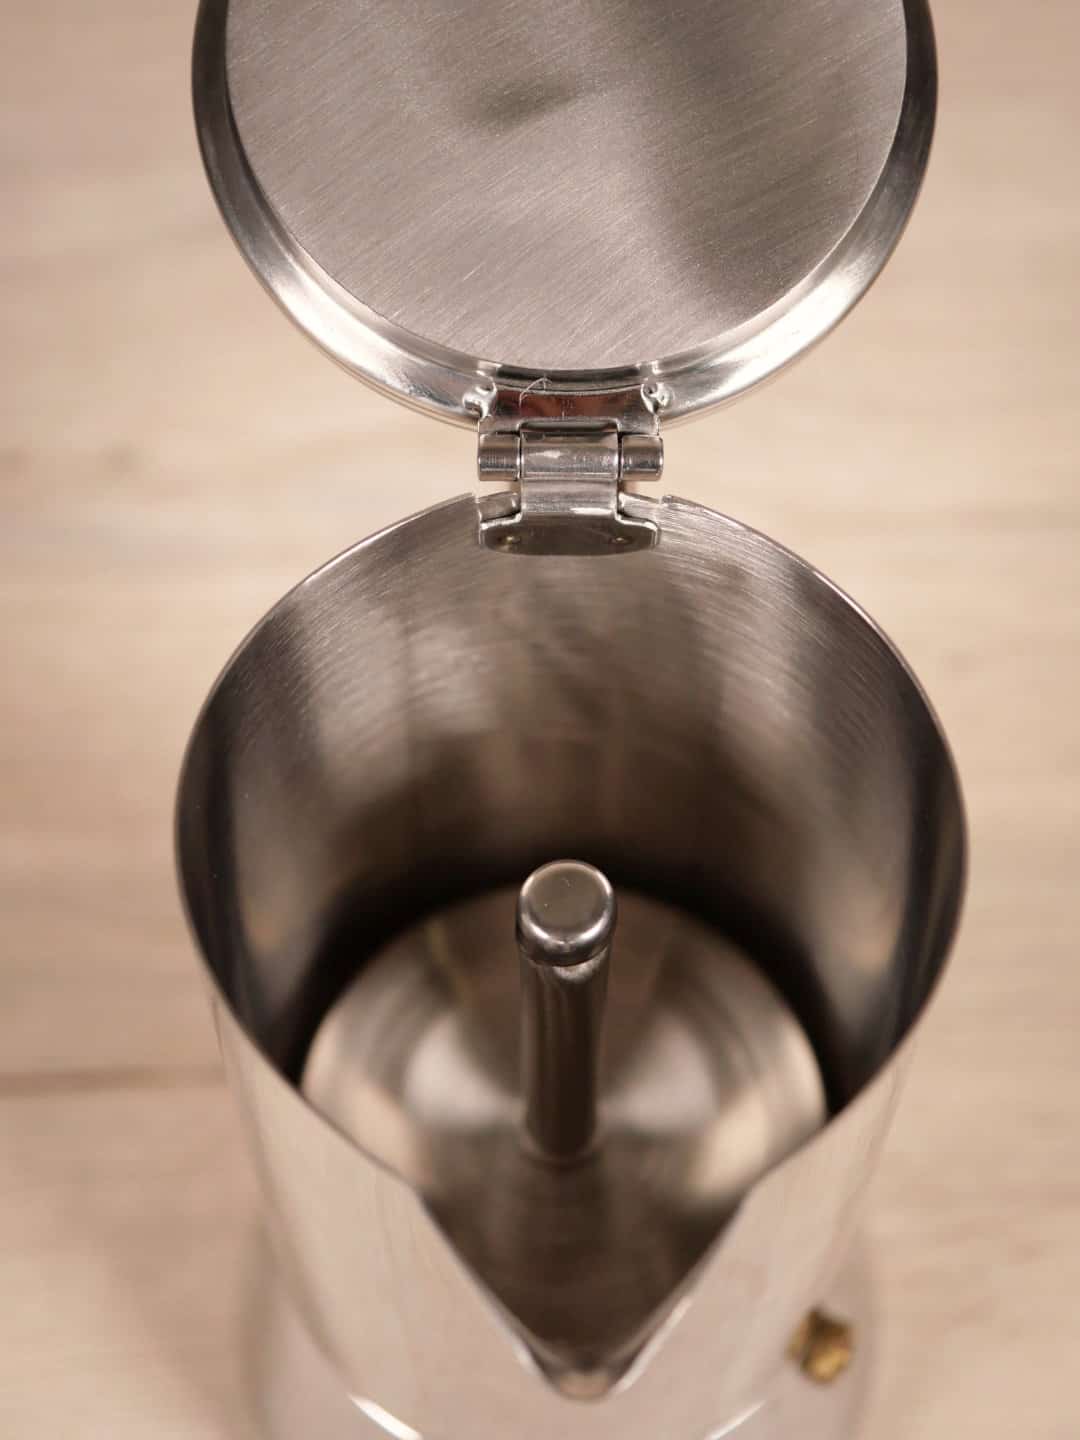 Espressokocher 4 Tassen - Nando - Kaffeezubereiter - Gefu